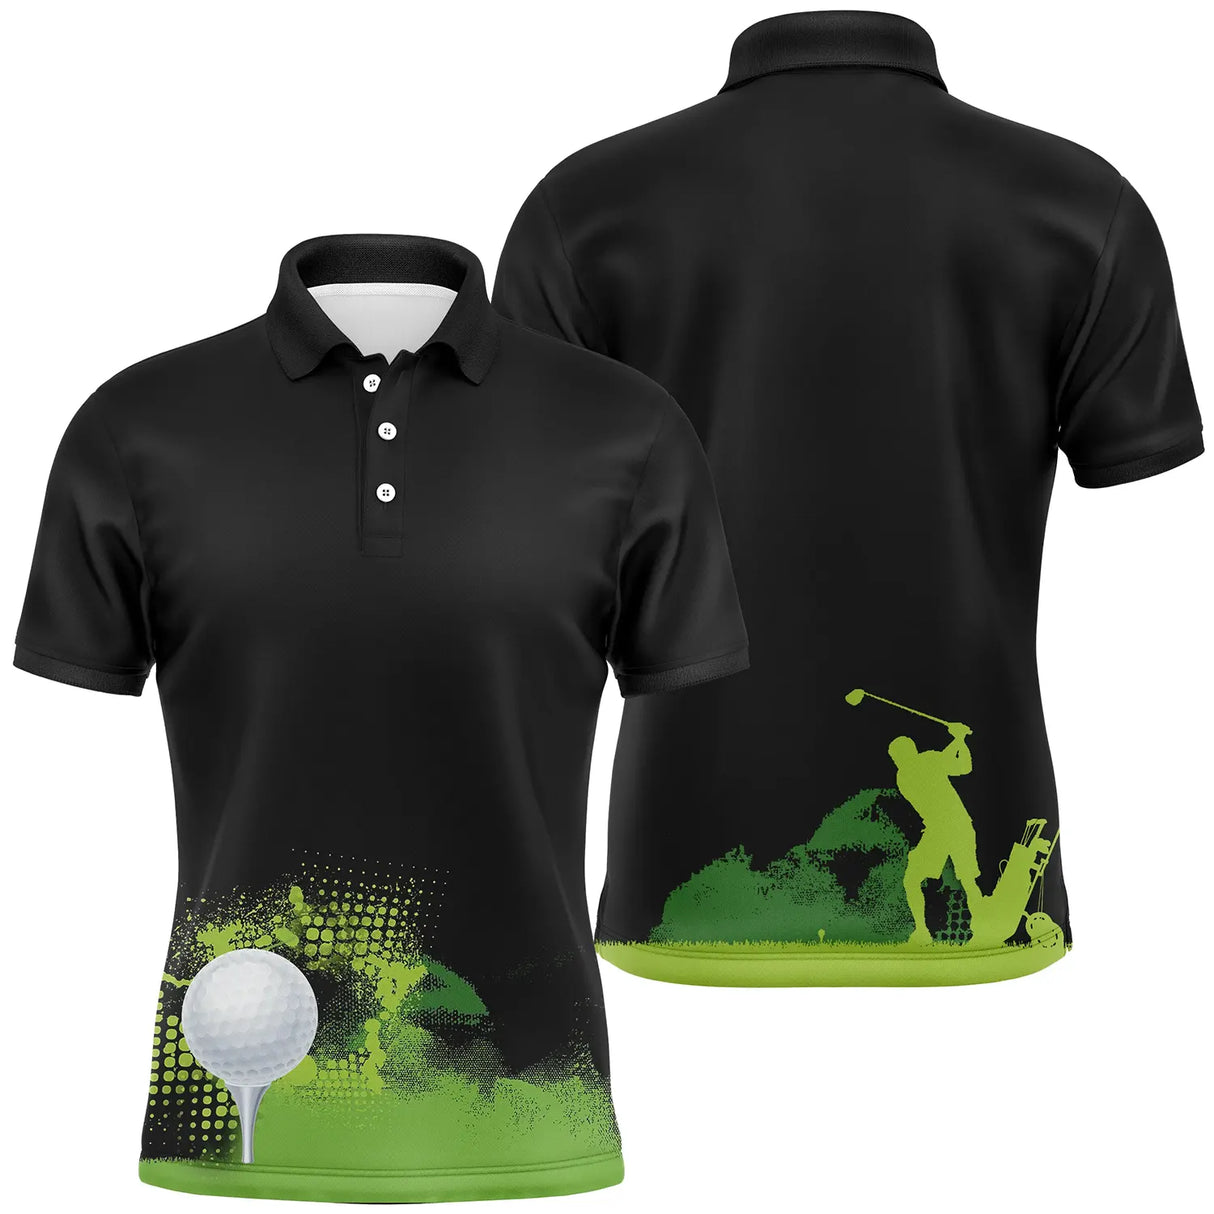 Polo Golf Noir Personnalisé, Motif Terrain Golf Vert - Confort Optimal pour Amateurs et Pros - CT04072313 Polo Homme